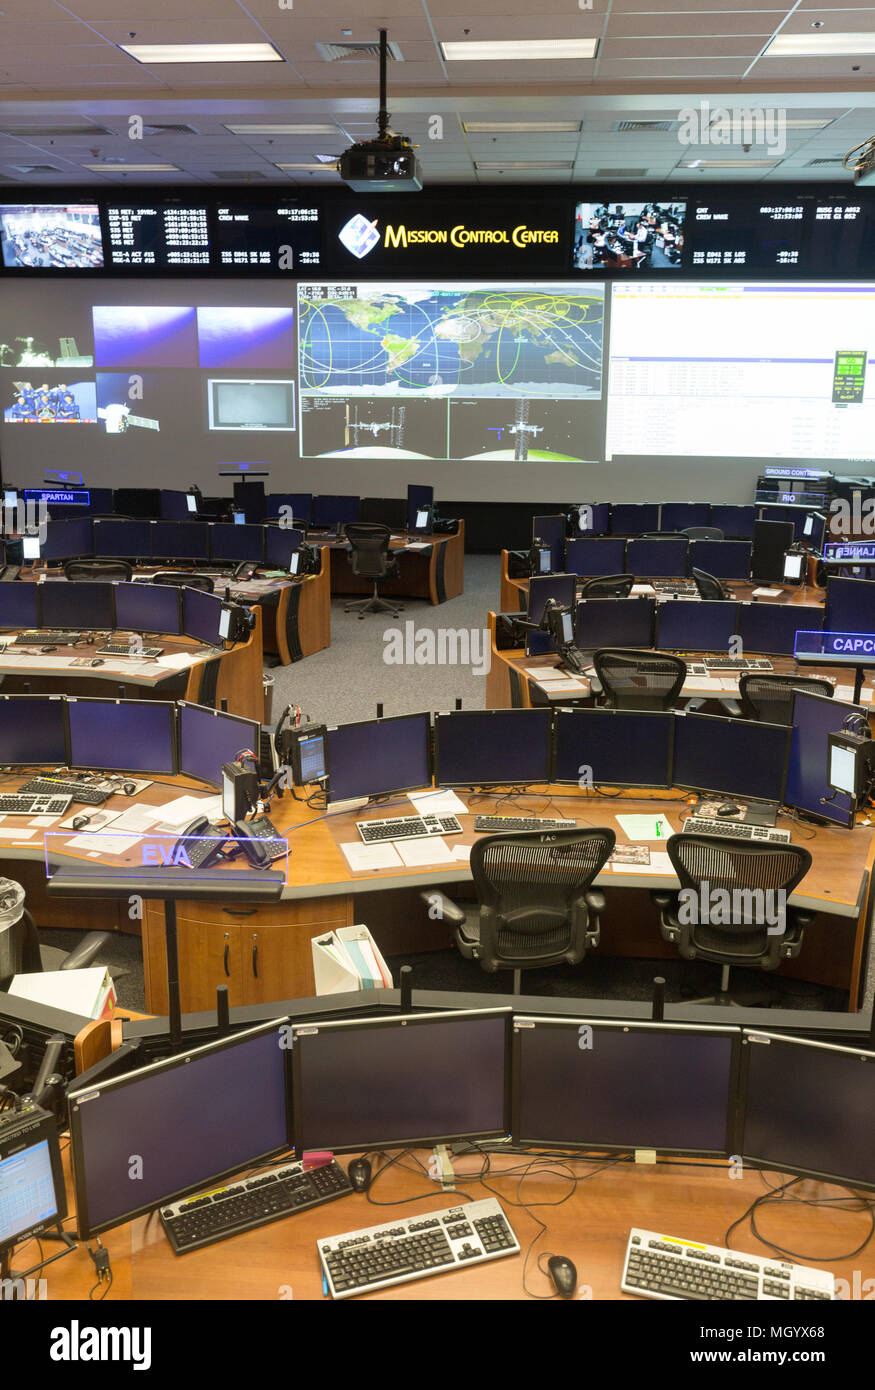 Mission Control Center, NASA Johnson Space Center, Houston, Texas, USA Stockfoto